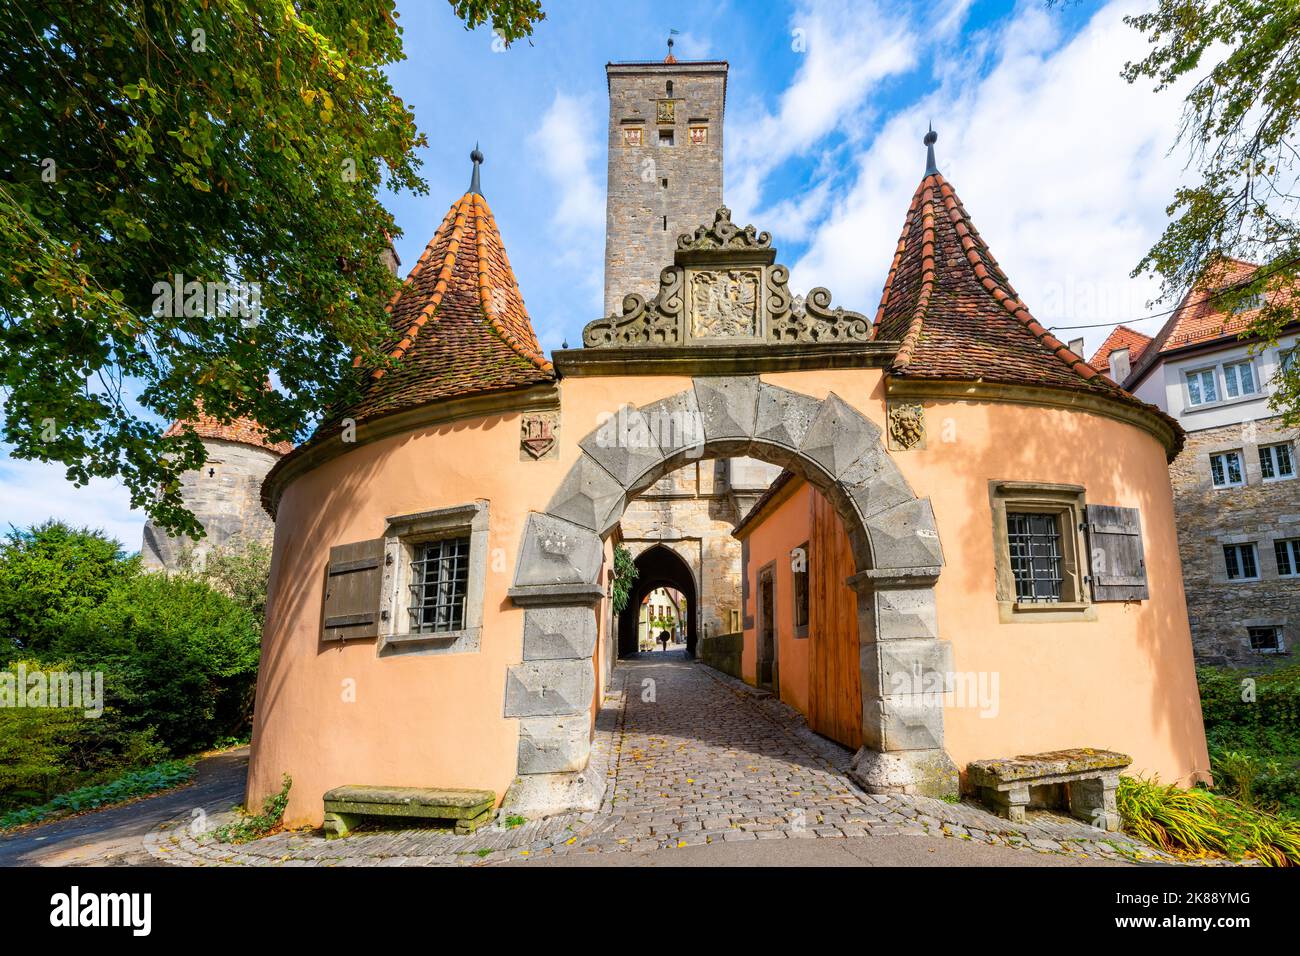 La porte de la ville de l'ouest Burgtor dans la pittoresque ville médiévale de Rothenburg ob der Tauber, en Allemagne, l'un des arrêts le long de la route romantique. Banque D'Images